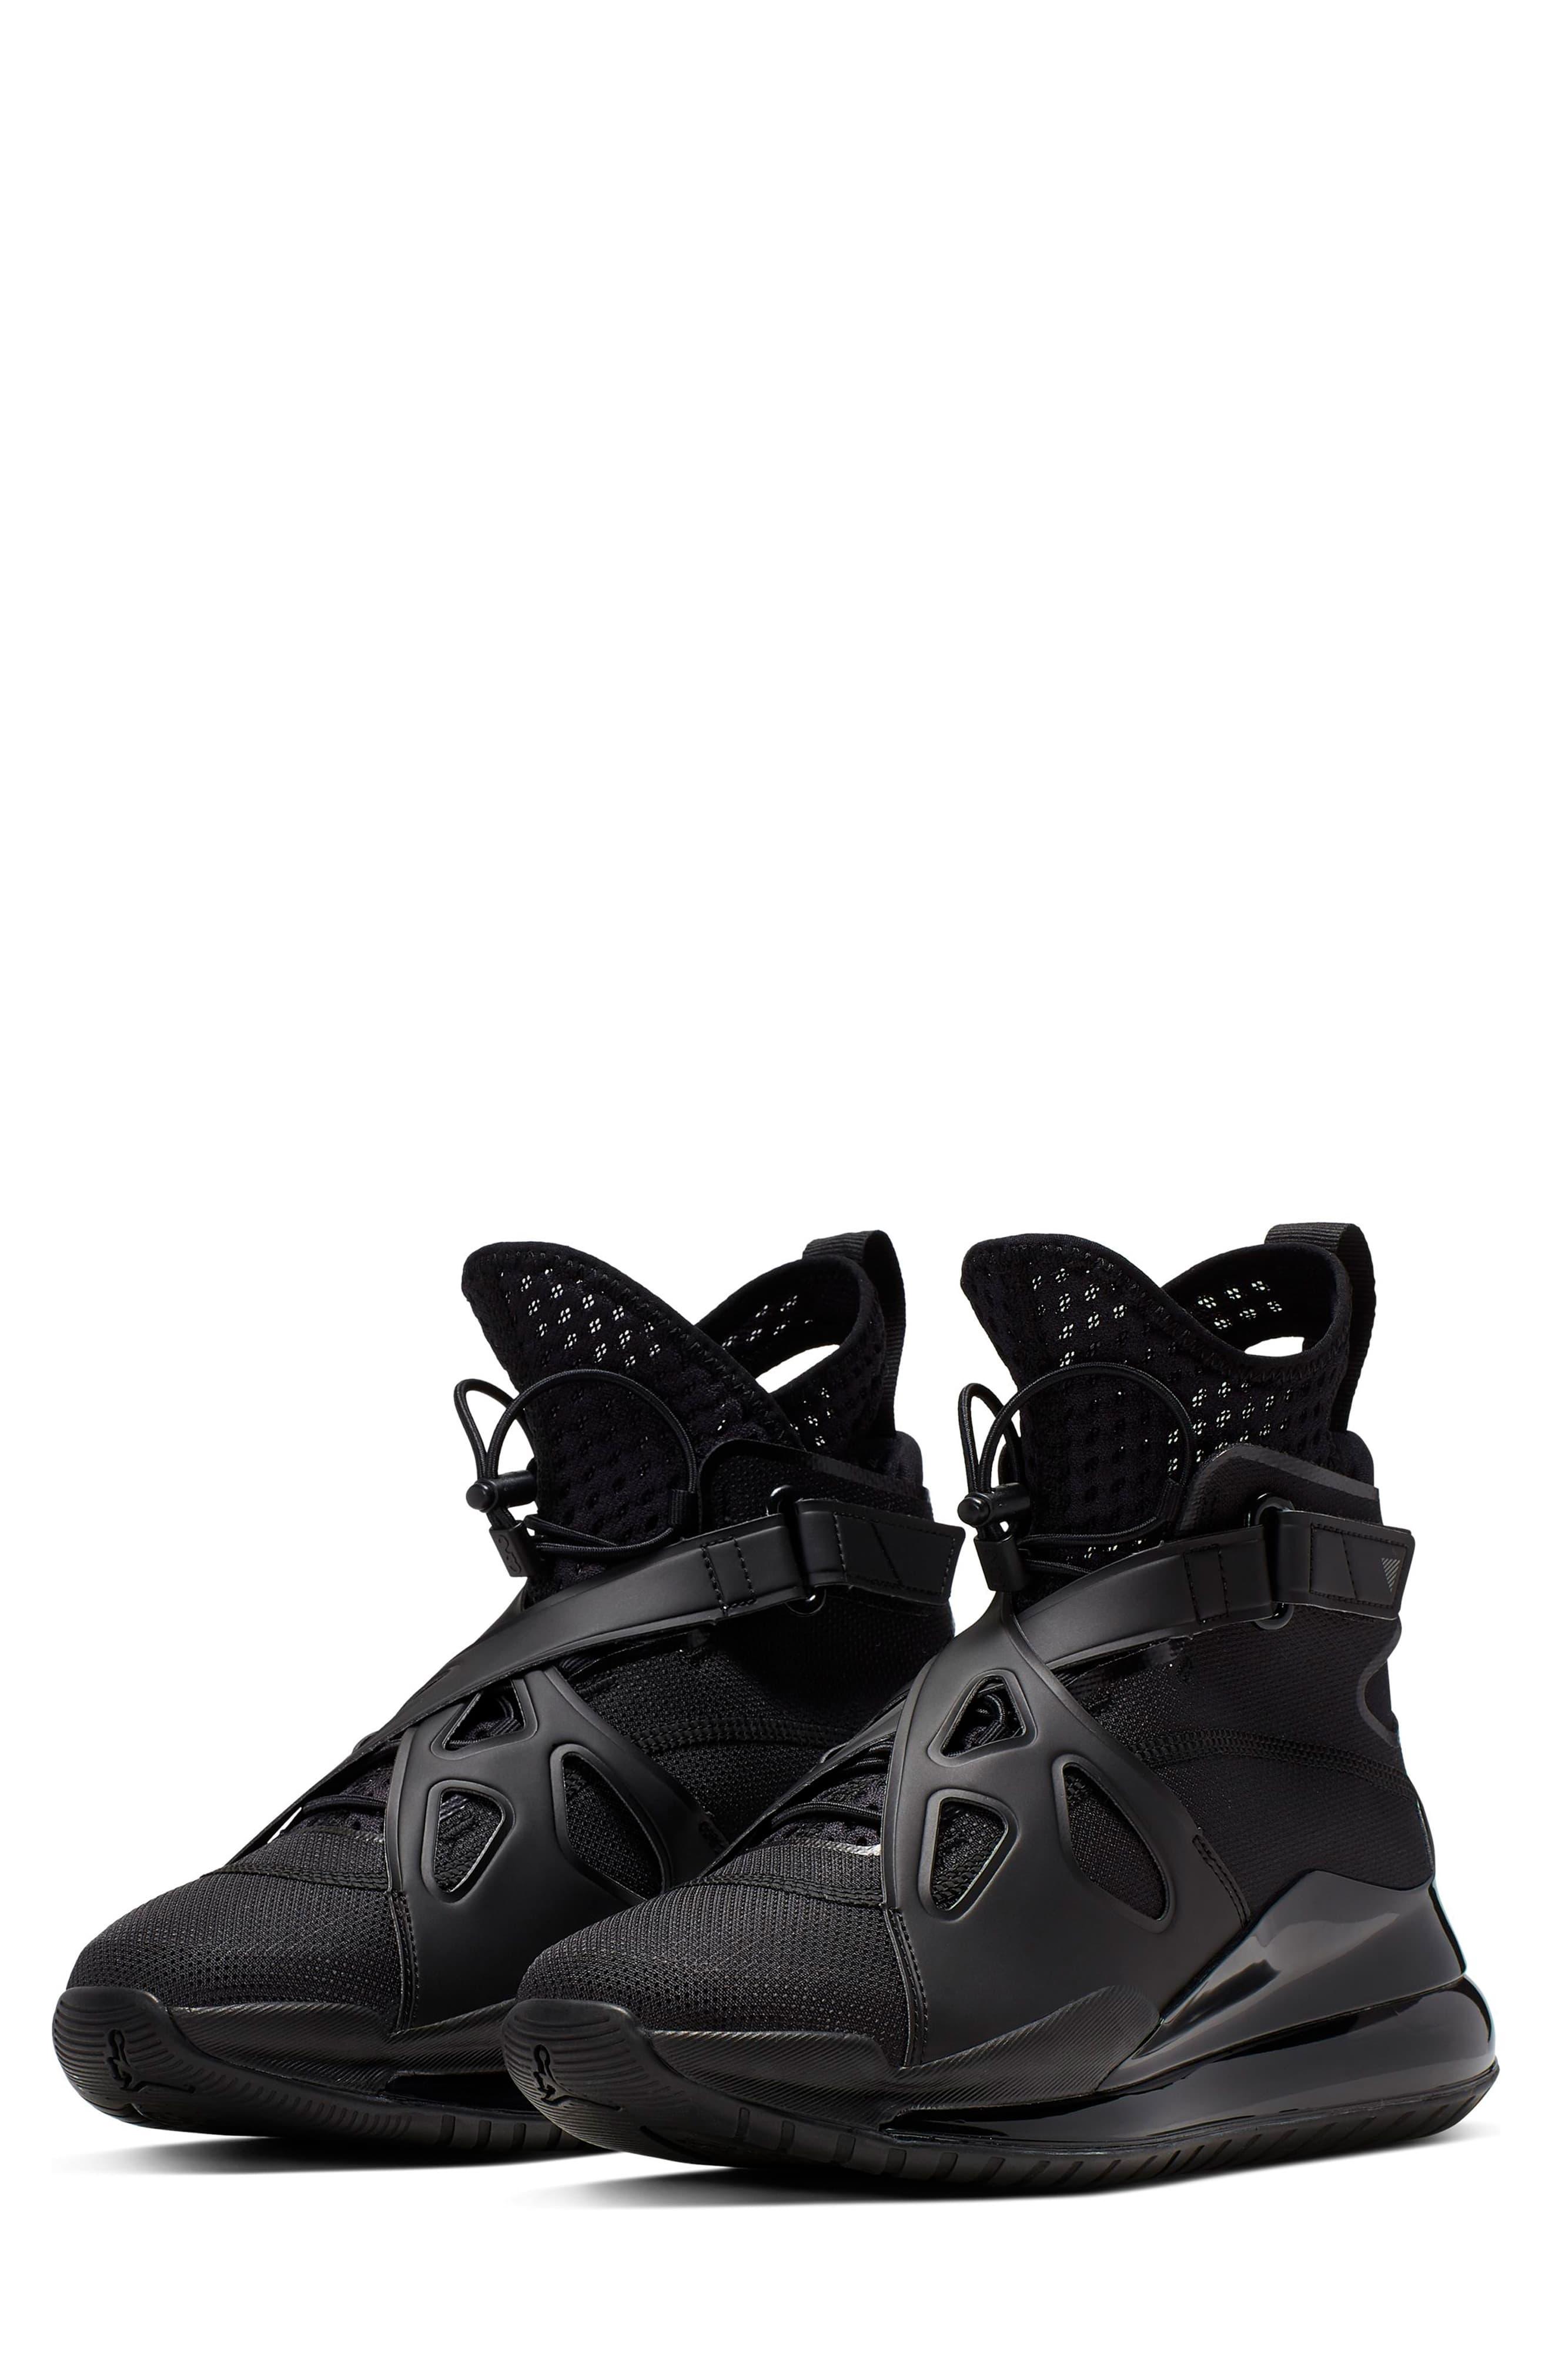 Nike Jordan Air Latitude 720 Shoe in 